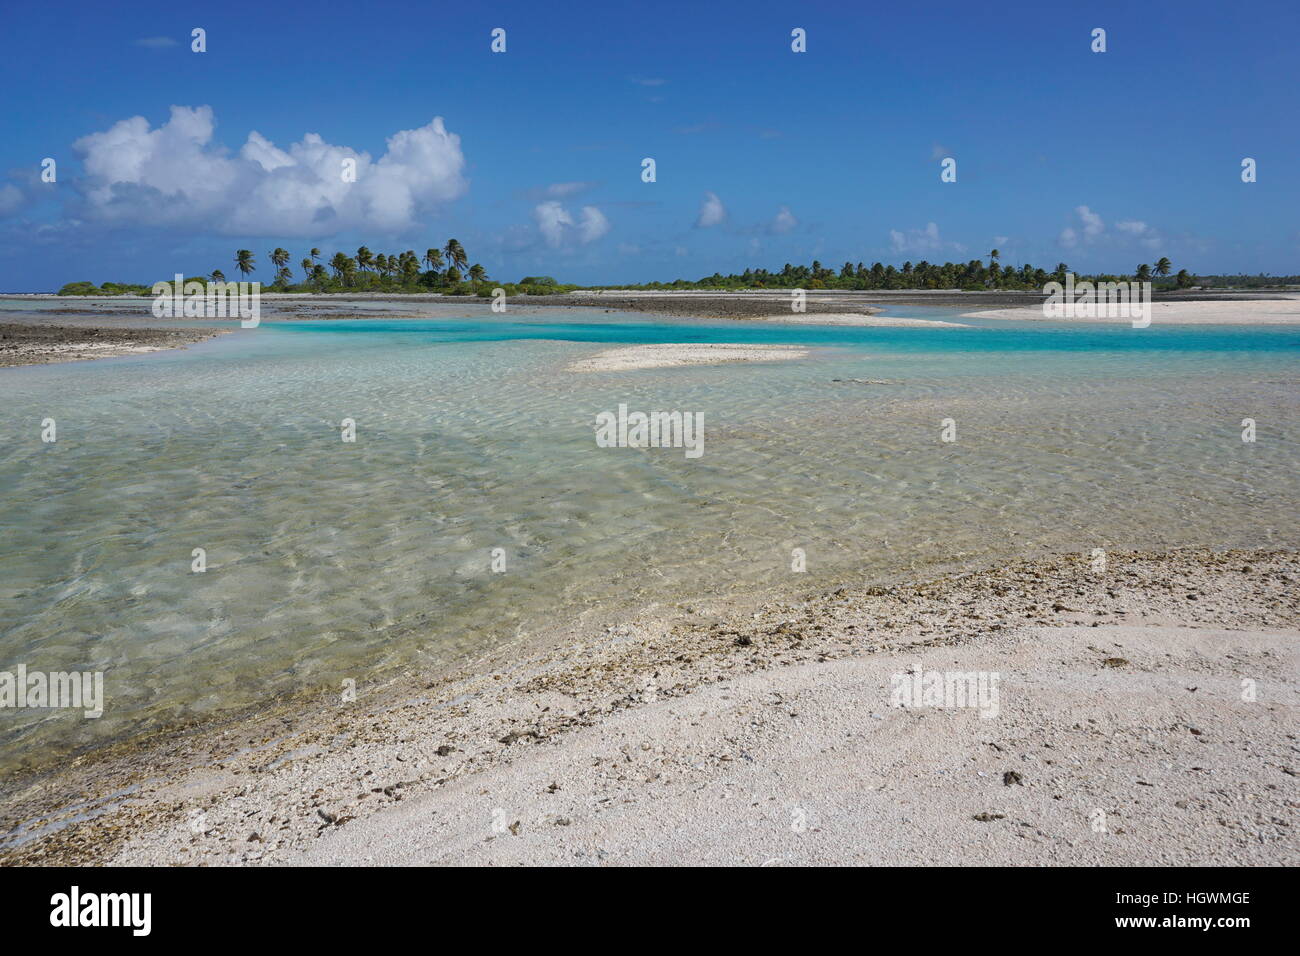 Un chenal peu profond (hoa) avec de l'eau turquoise, entre l'océan et le lagon, atoll de Tikehau, Tuamotu, Polynésie Française, Pacifique sud Banque D'Images